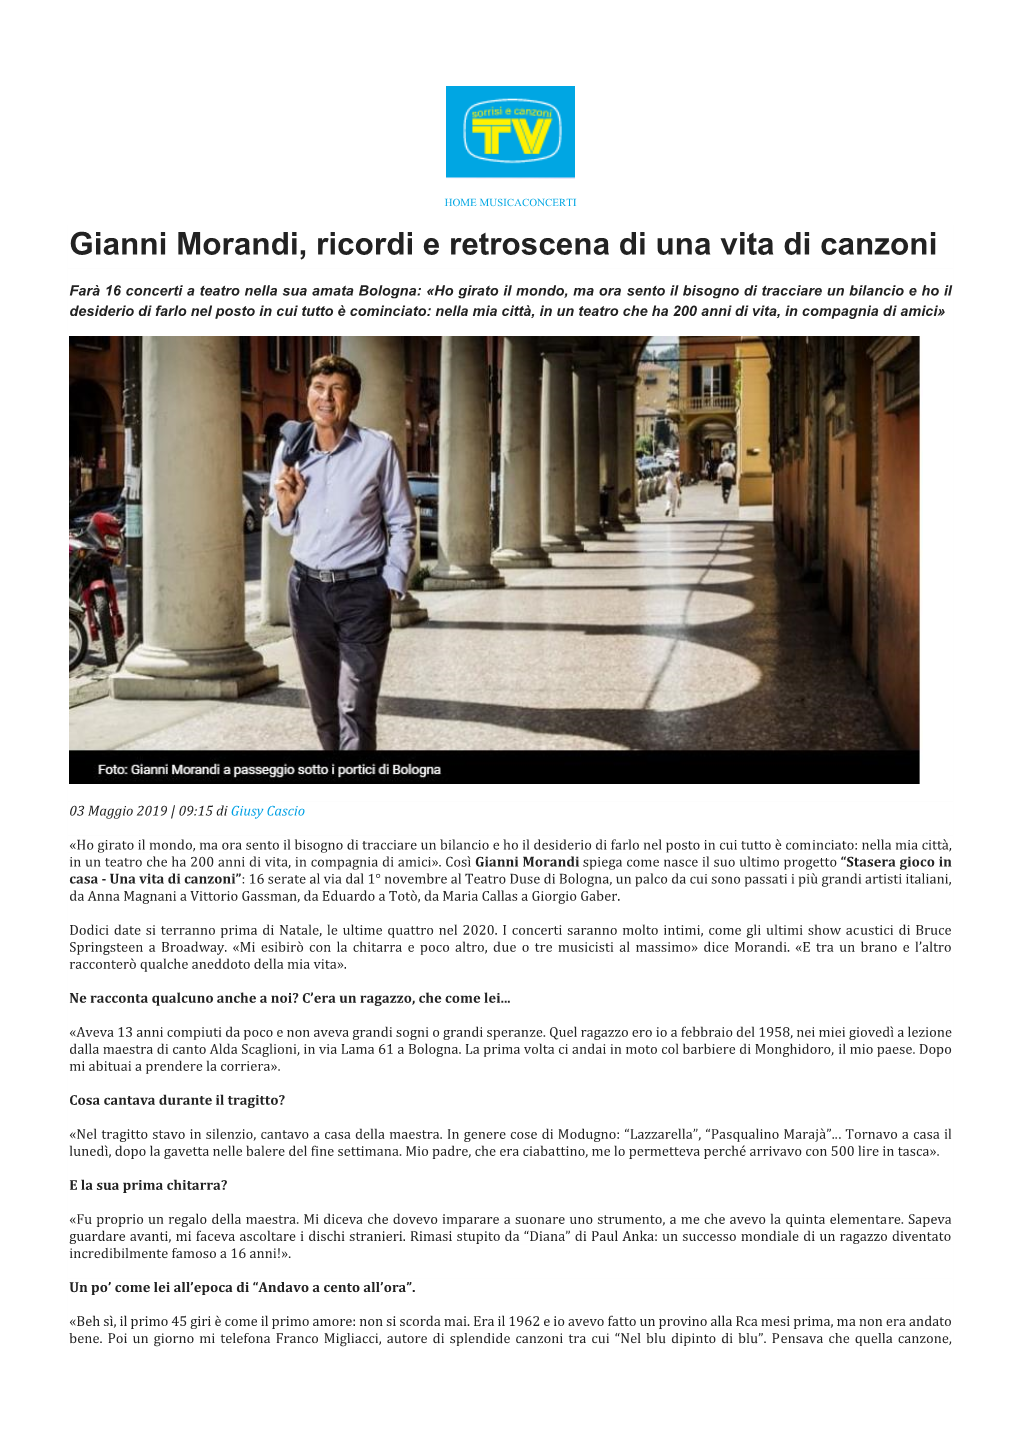 Gianni Morandi, Ricordi E Retroscena Di Una Vita Di Canzoni